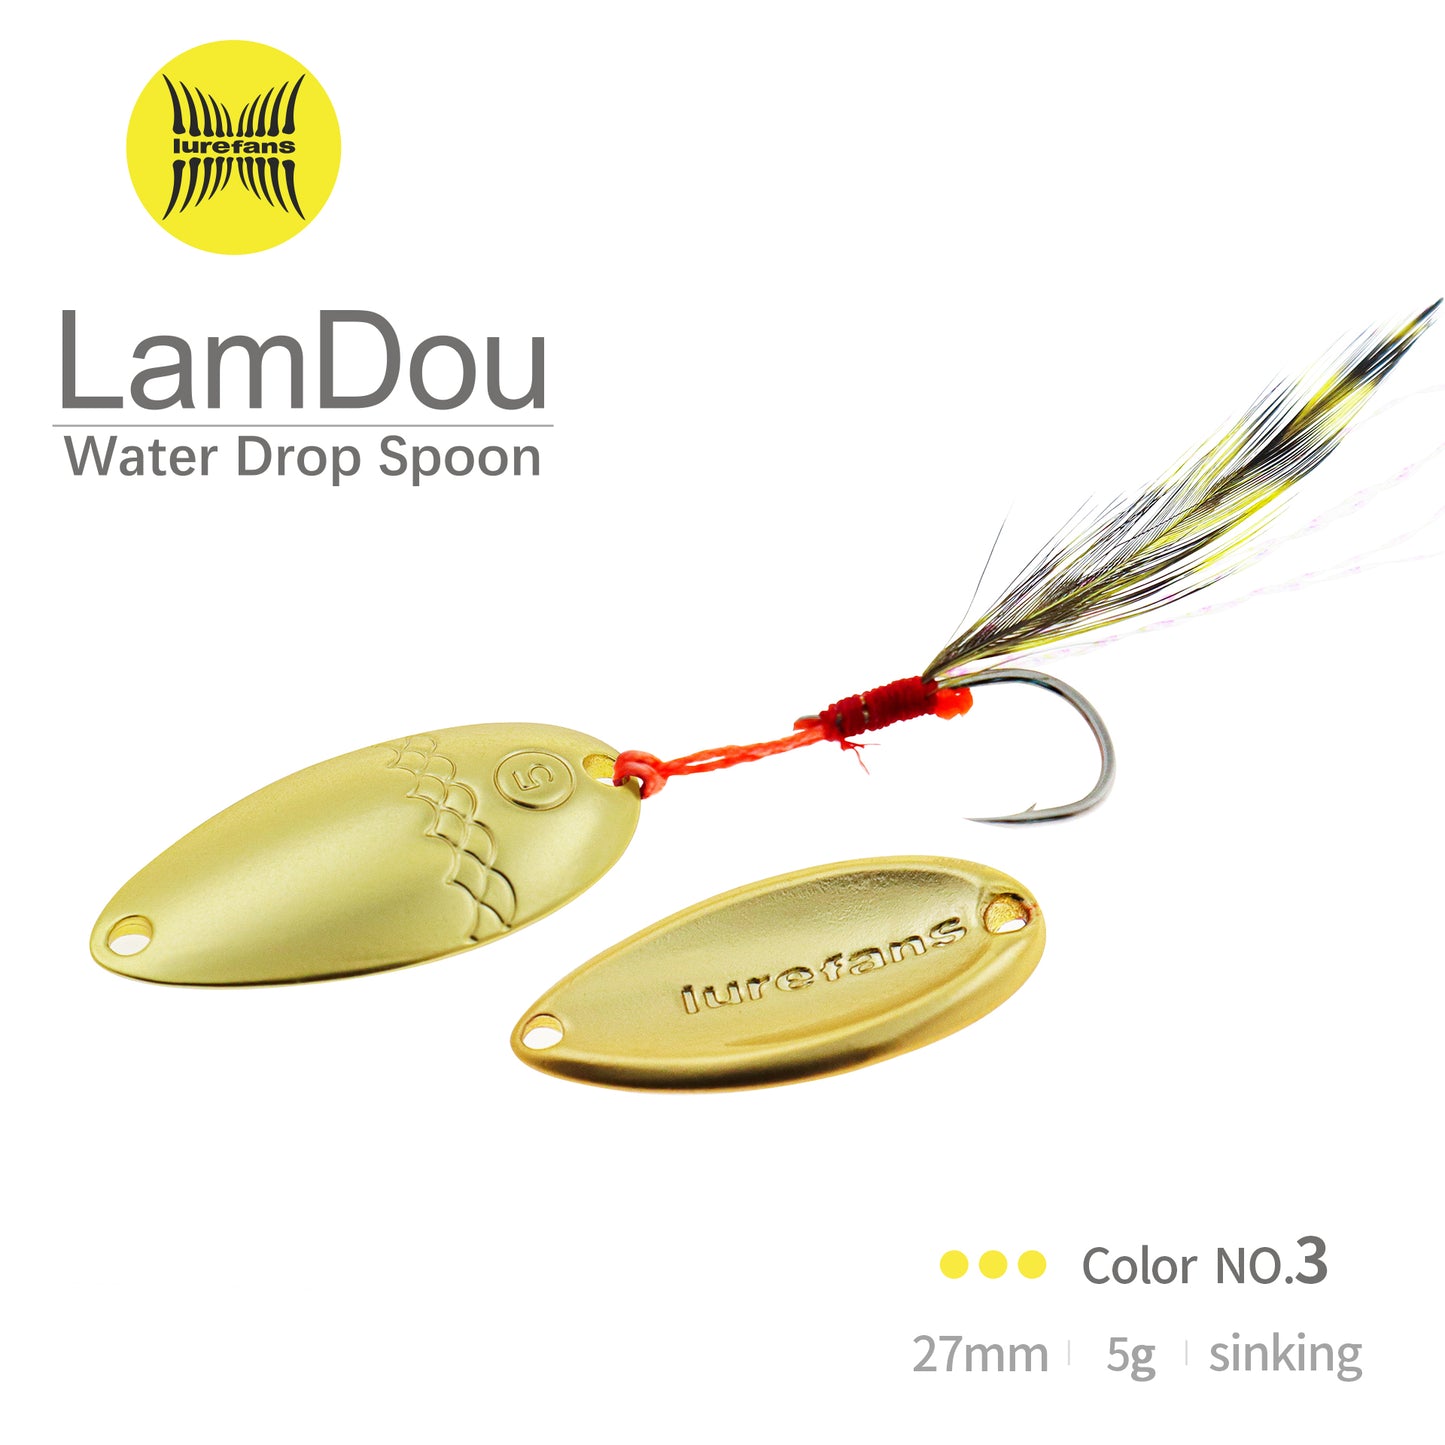 LAMDOU-Water Drop Spoon 27mm (5g)